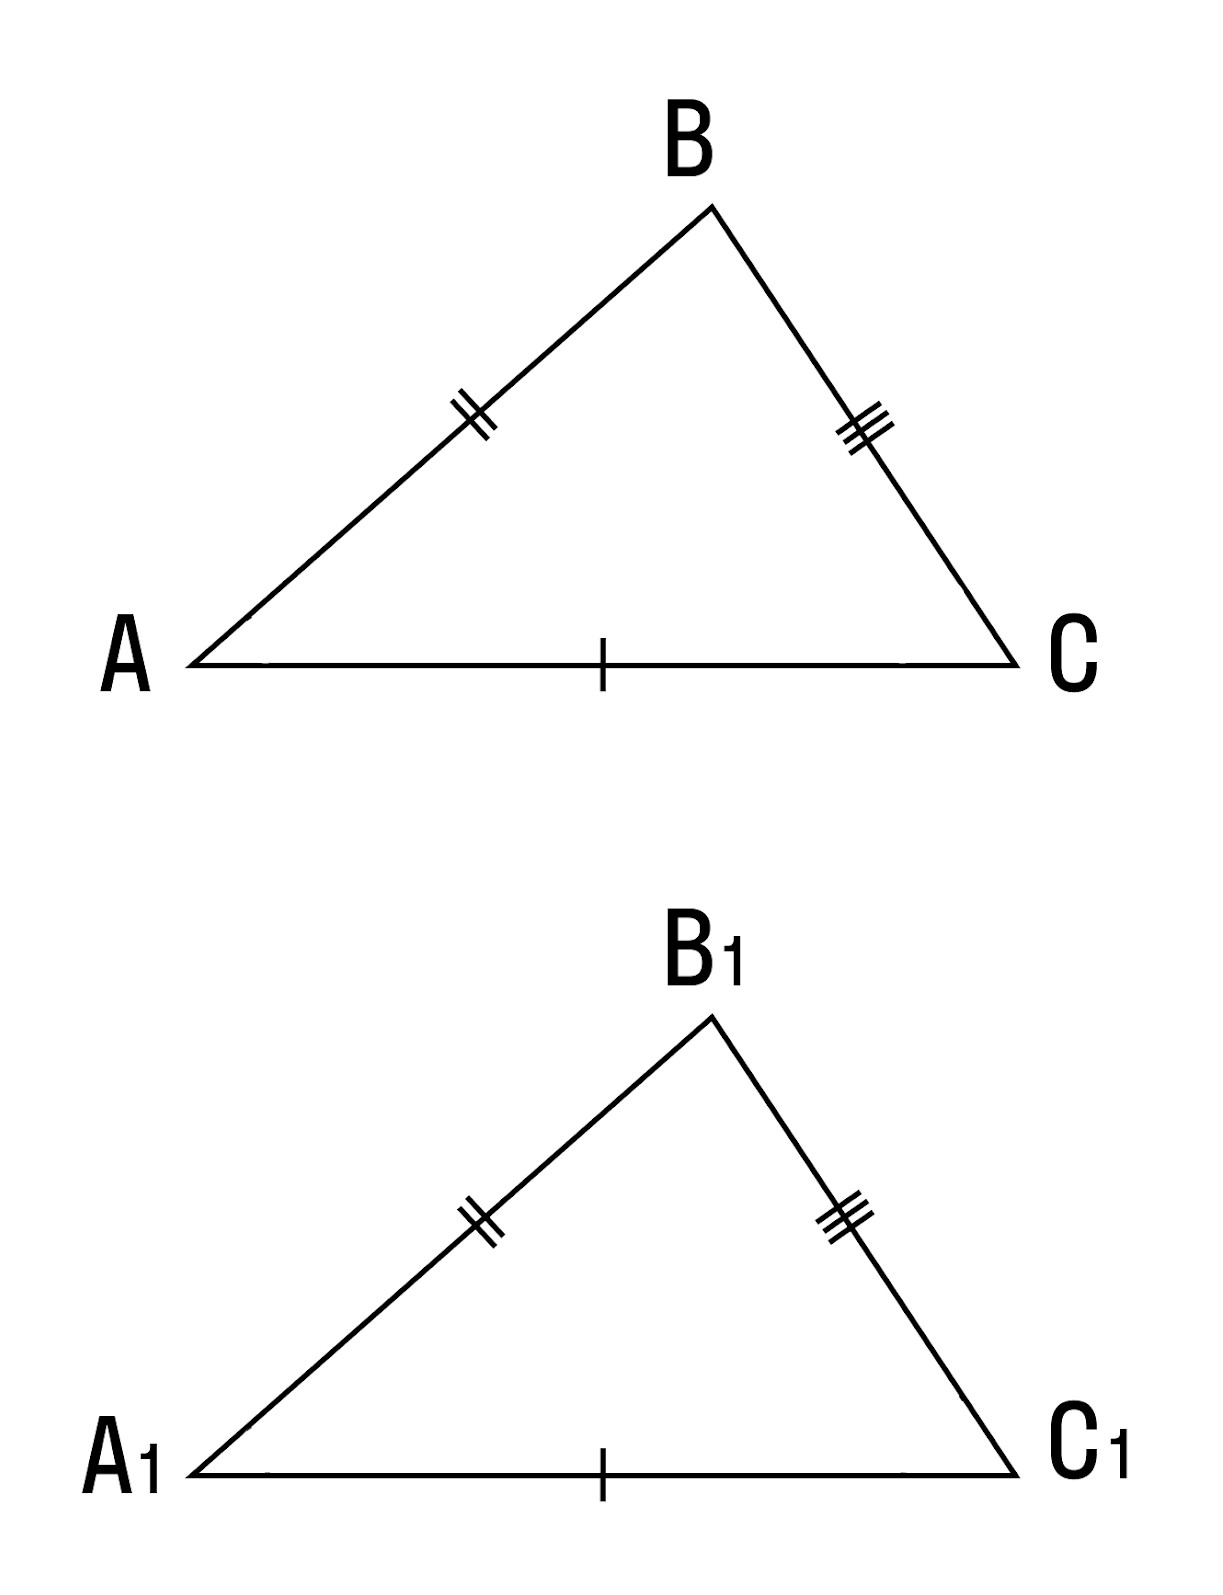 Как доказать что треугольники равны по параллельным прямым